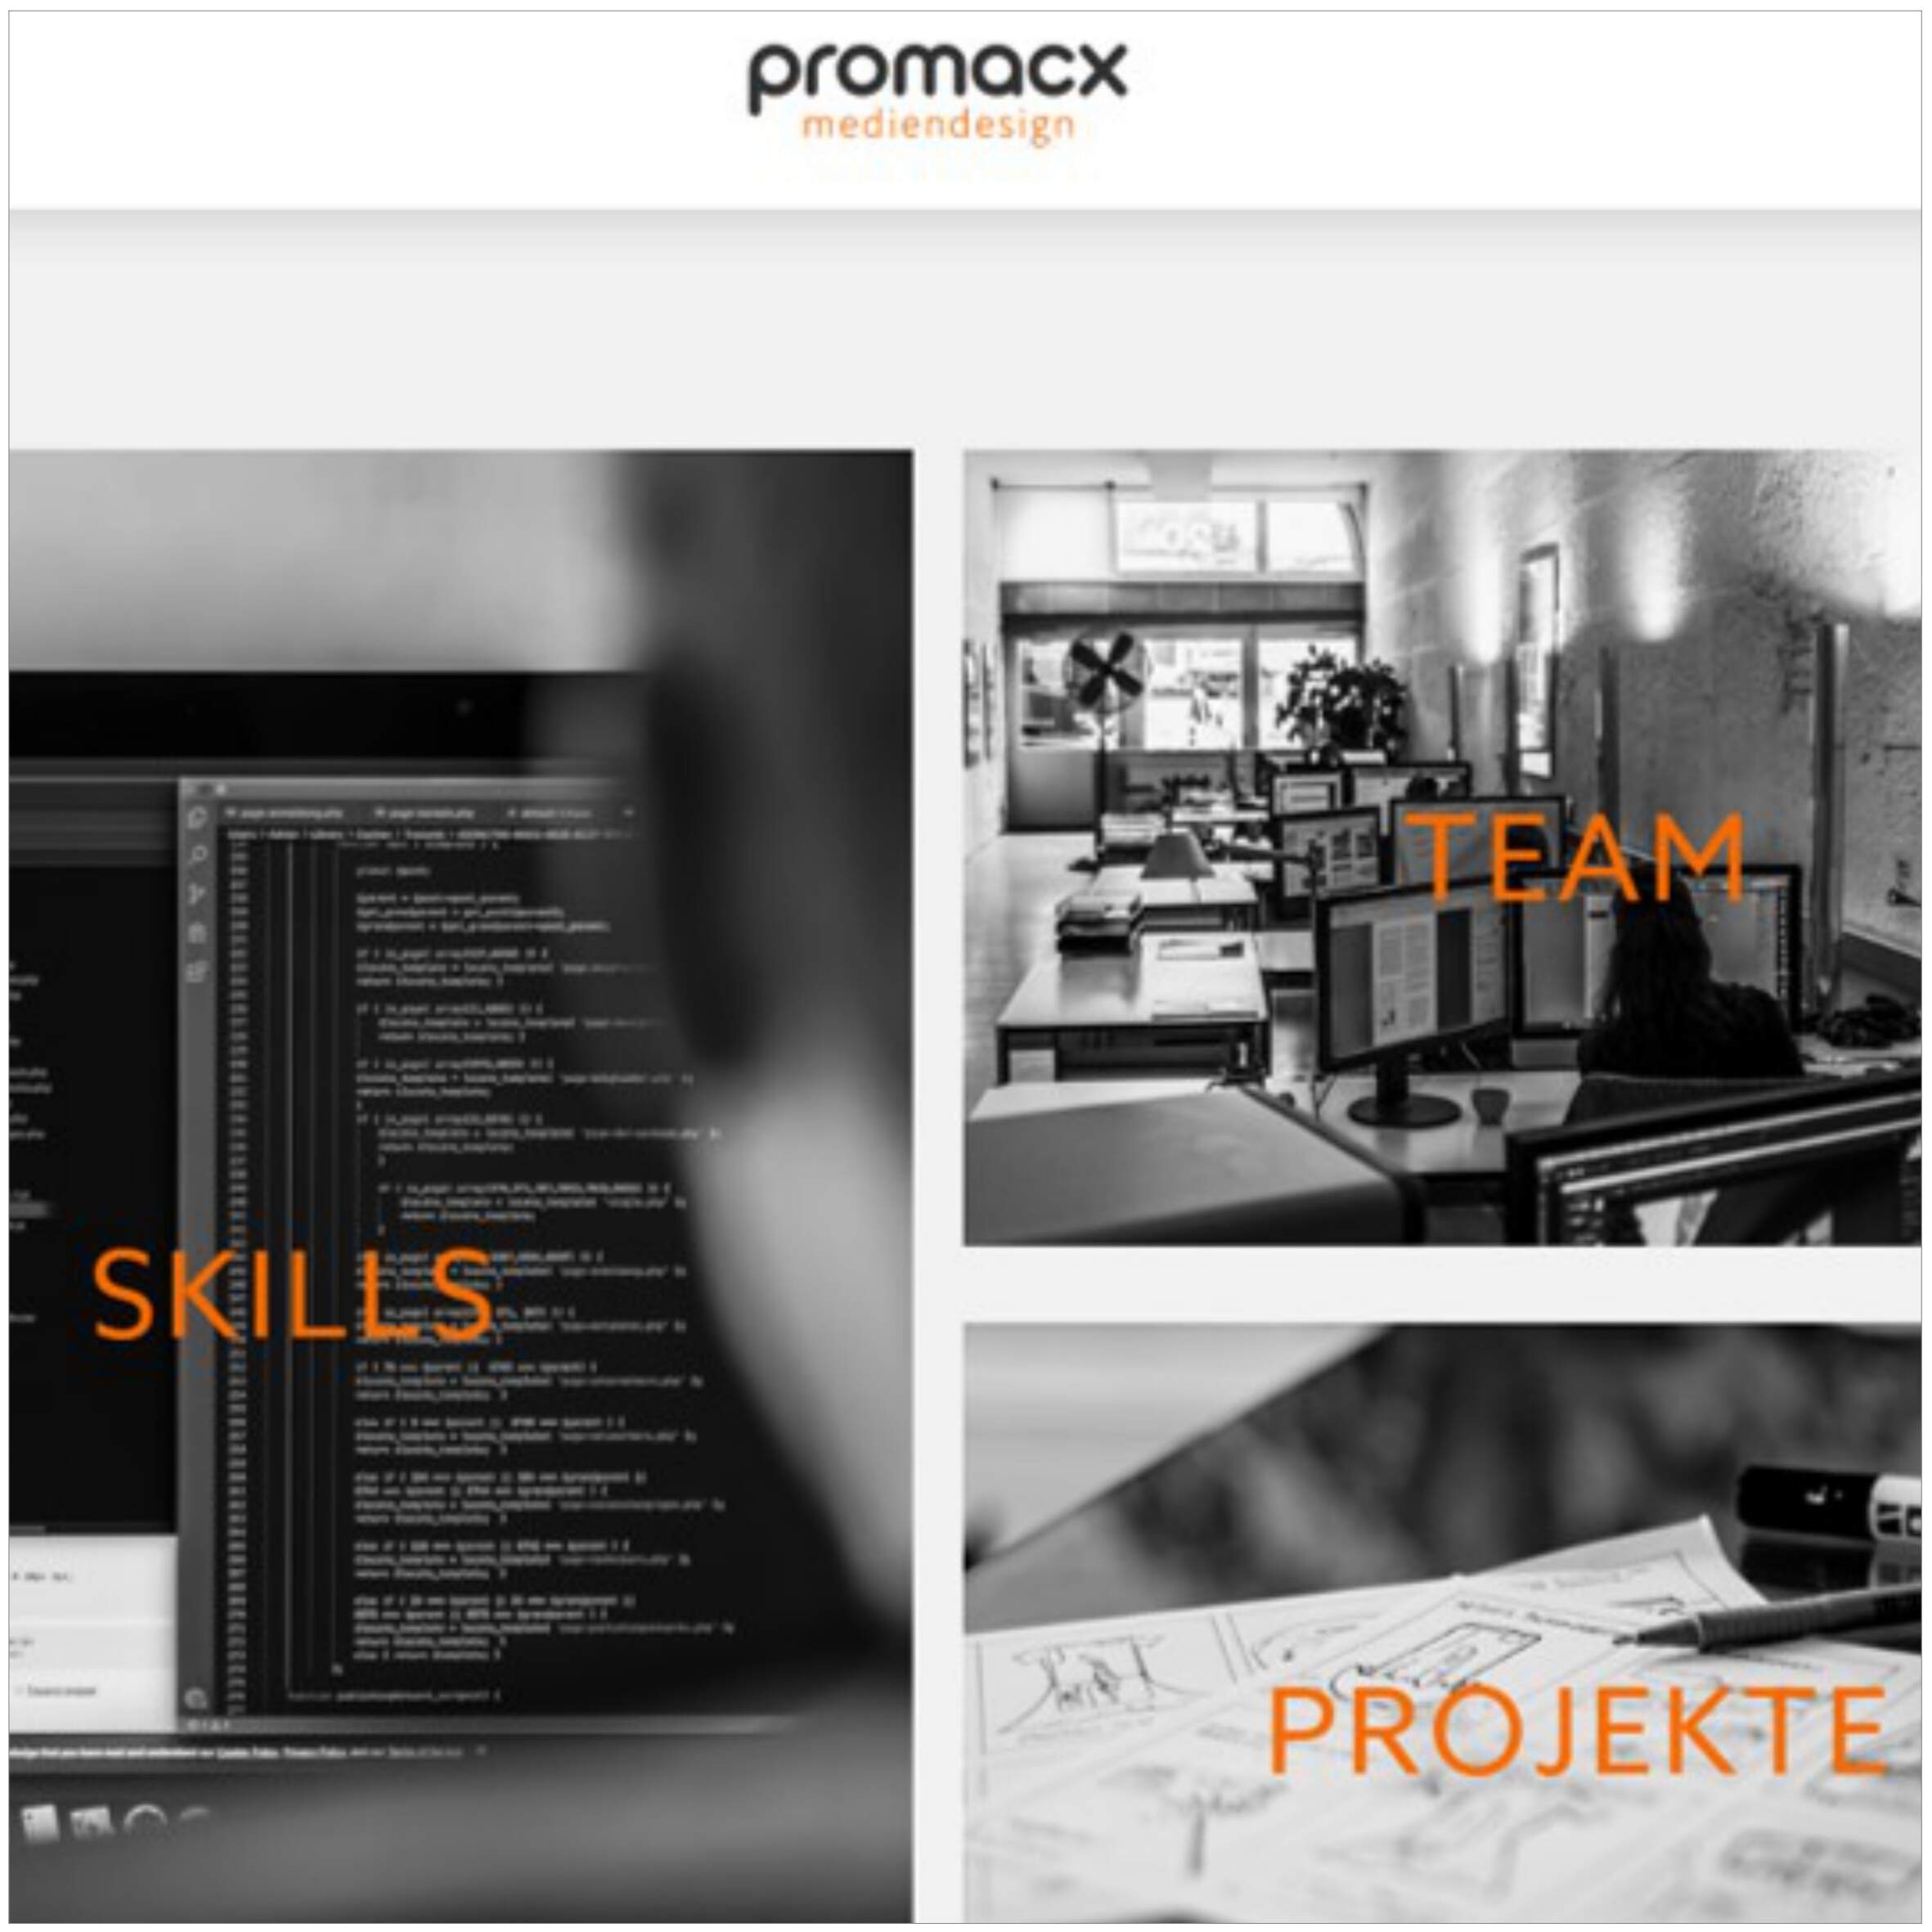 Textredaktion für die Webseite der Agentur Promacx